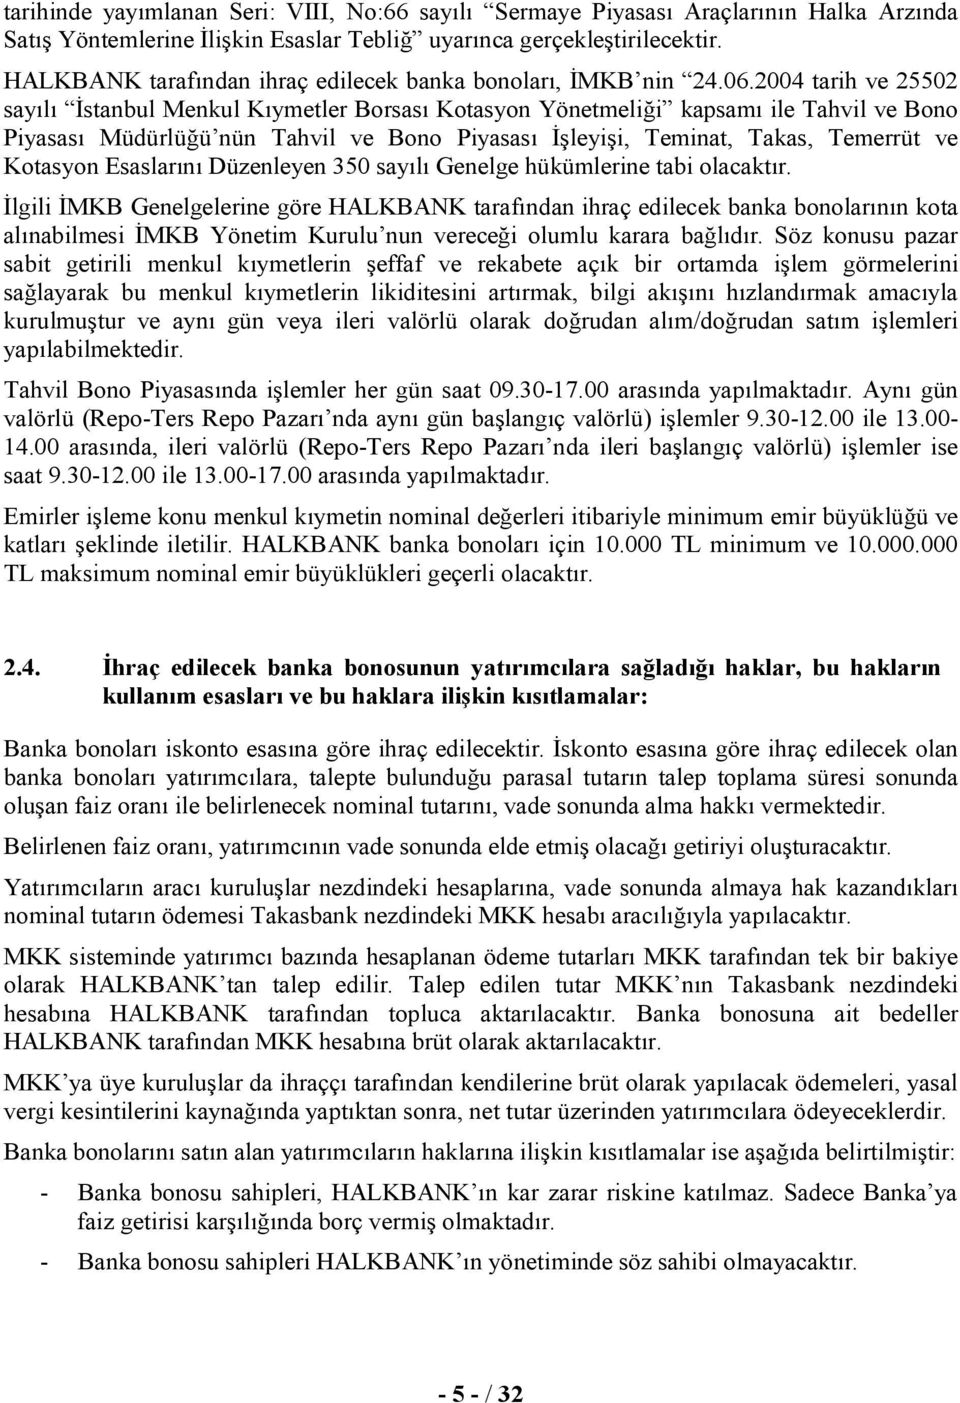 2004 tarih ve 25502 sayılı İstanbul Menkul Kıymetler Borsası Kotasyon Yönetmeliği kapsamı ile Tahvil ve Bono Piyasası Müdürlüğü nün Tahvil ve Bono Piyasası İşleyişi, Teminat, Takas, Temerrüt ve